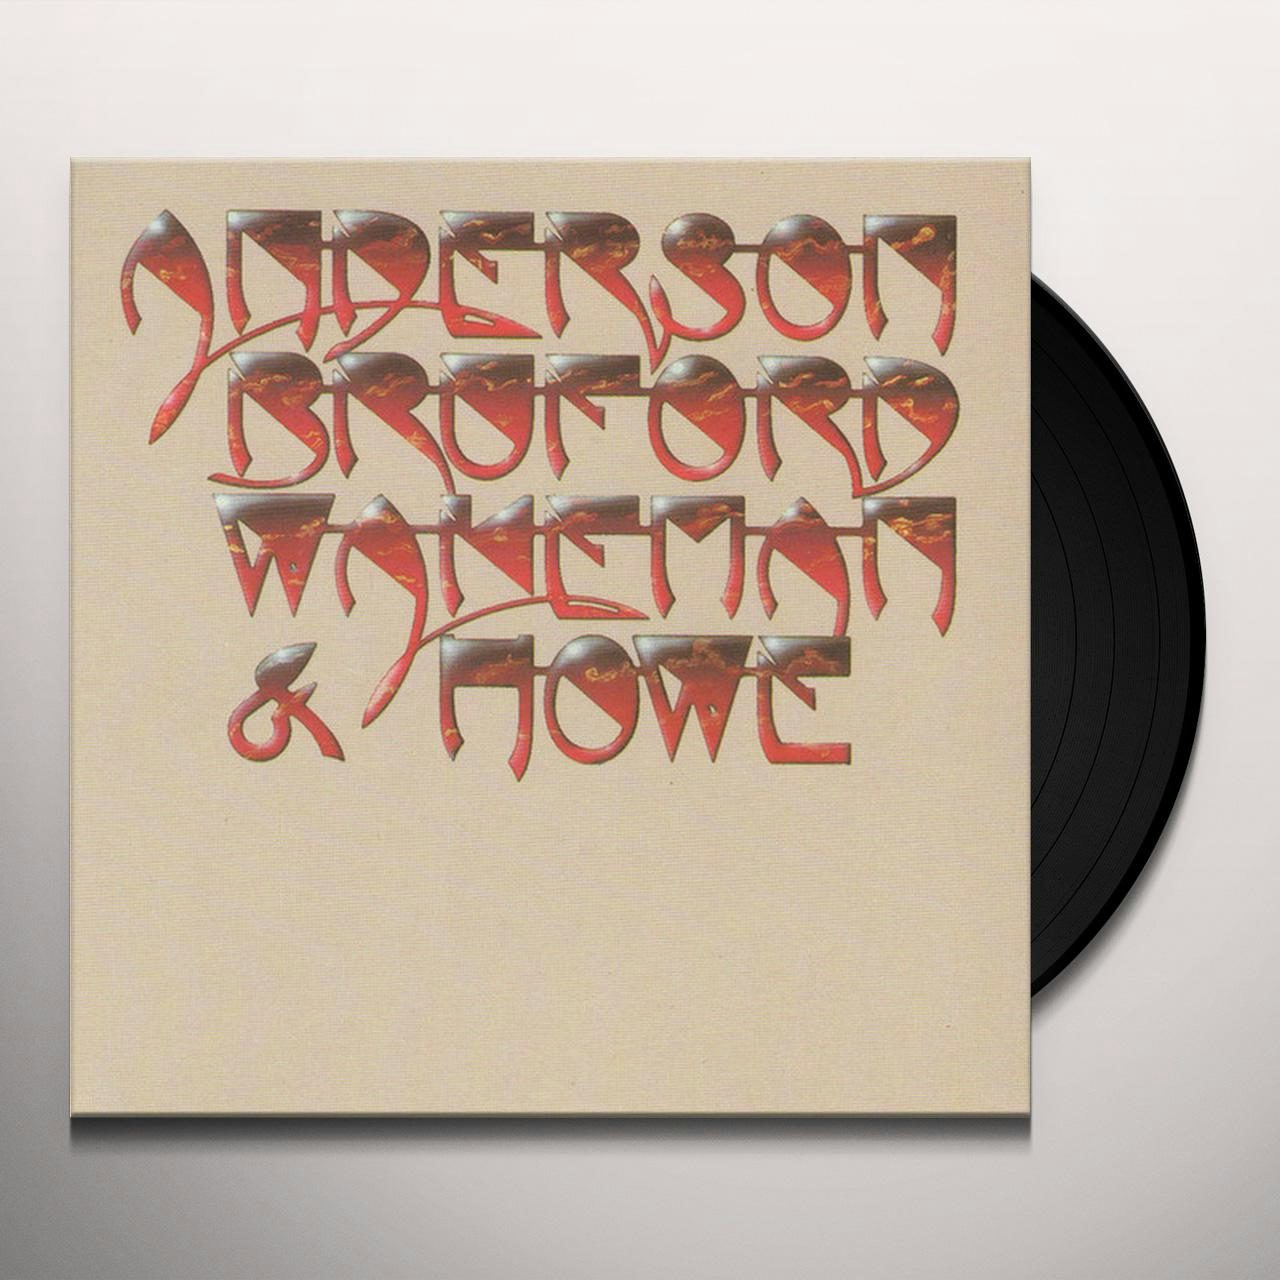 (180G) Vinyl Record - Anderson Bruford Wakeman Howe